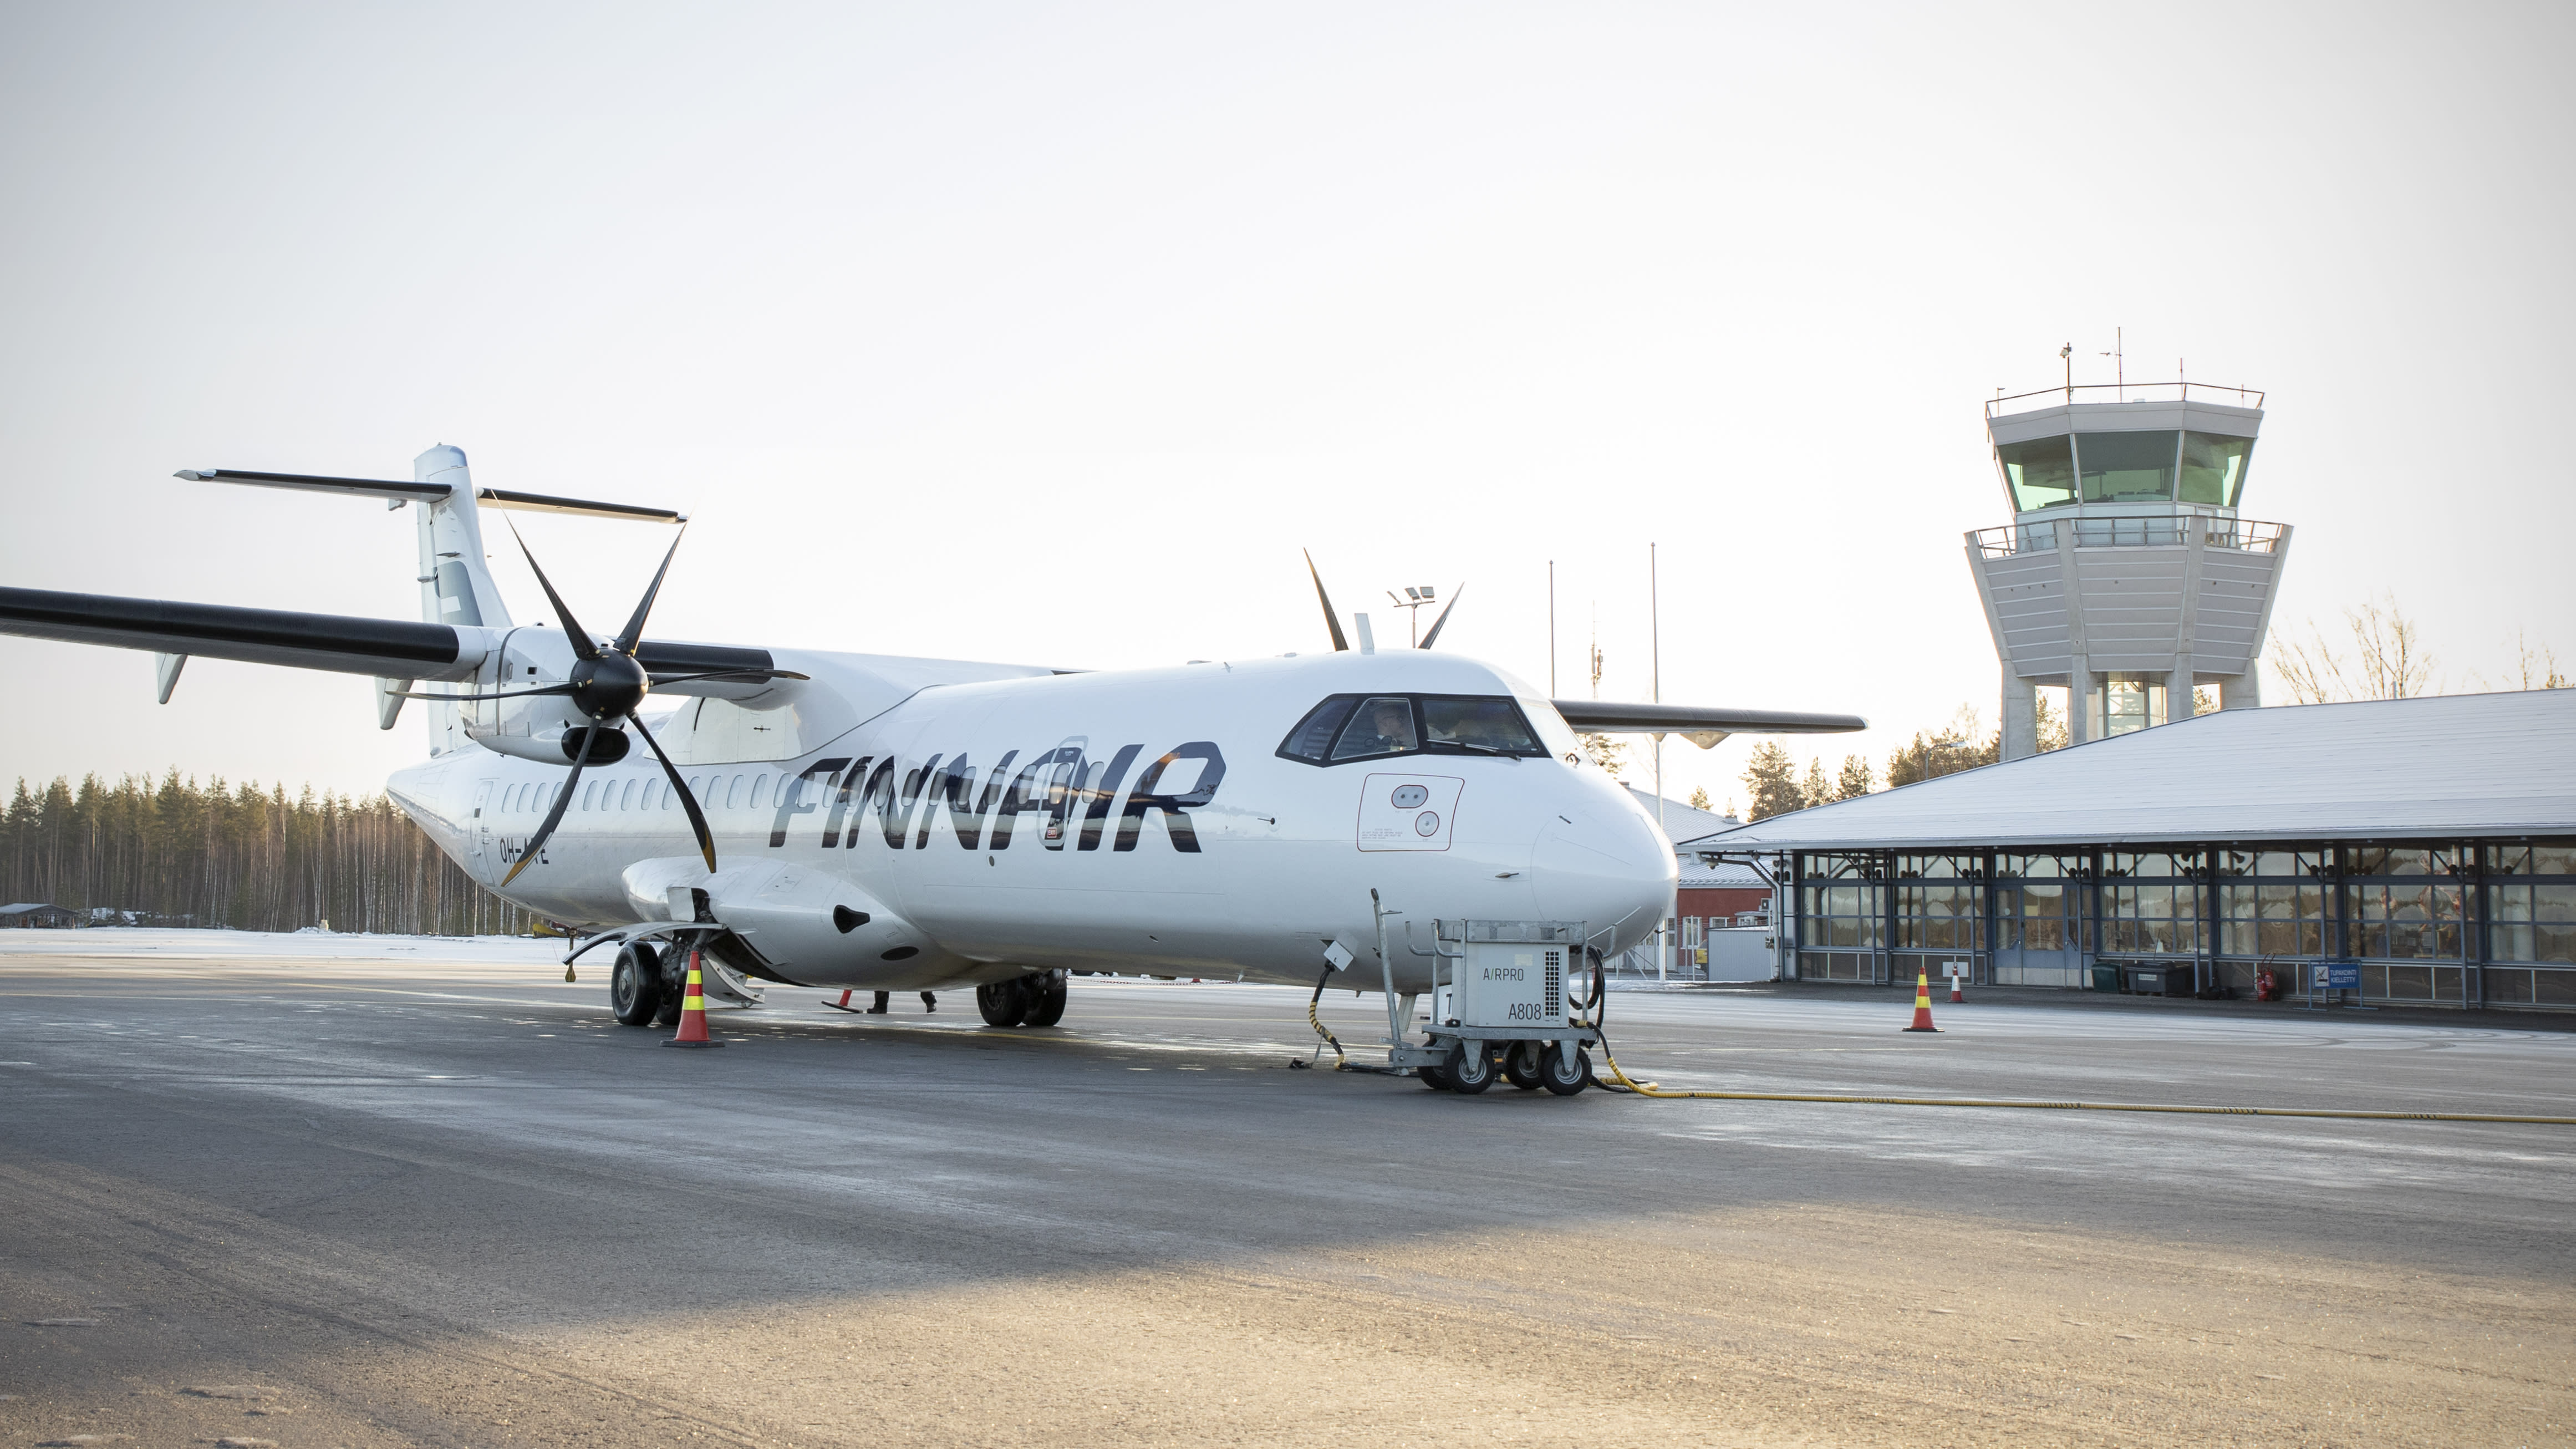 قال خبير إن فنلندا يجب أن تحظر الرحلات الجوية الداخلية التي تقل عن 400 كيلومتر